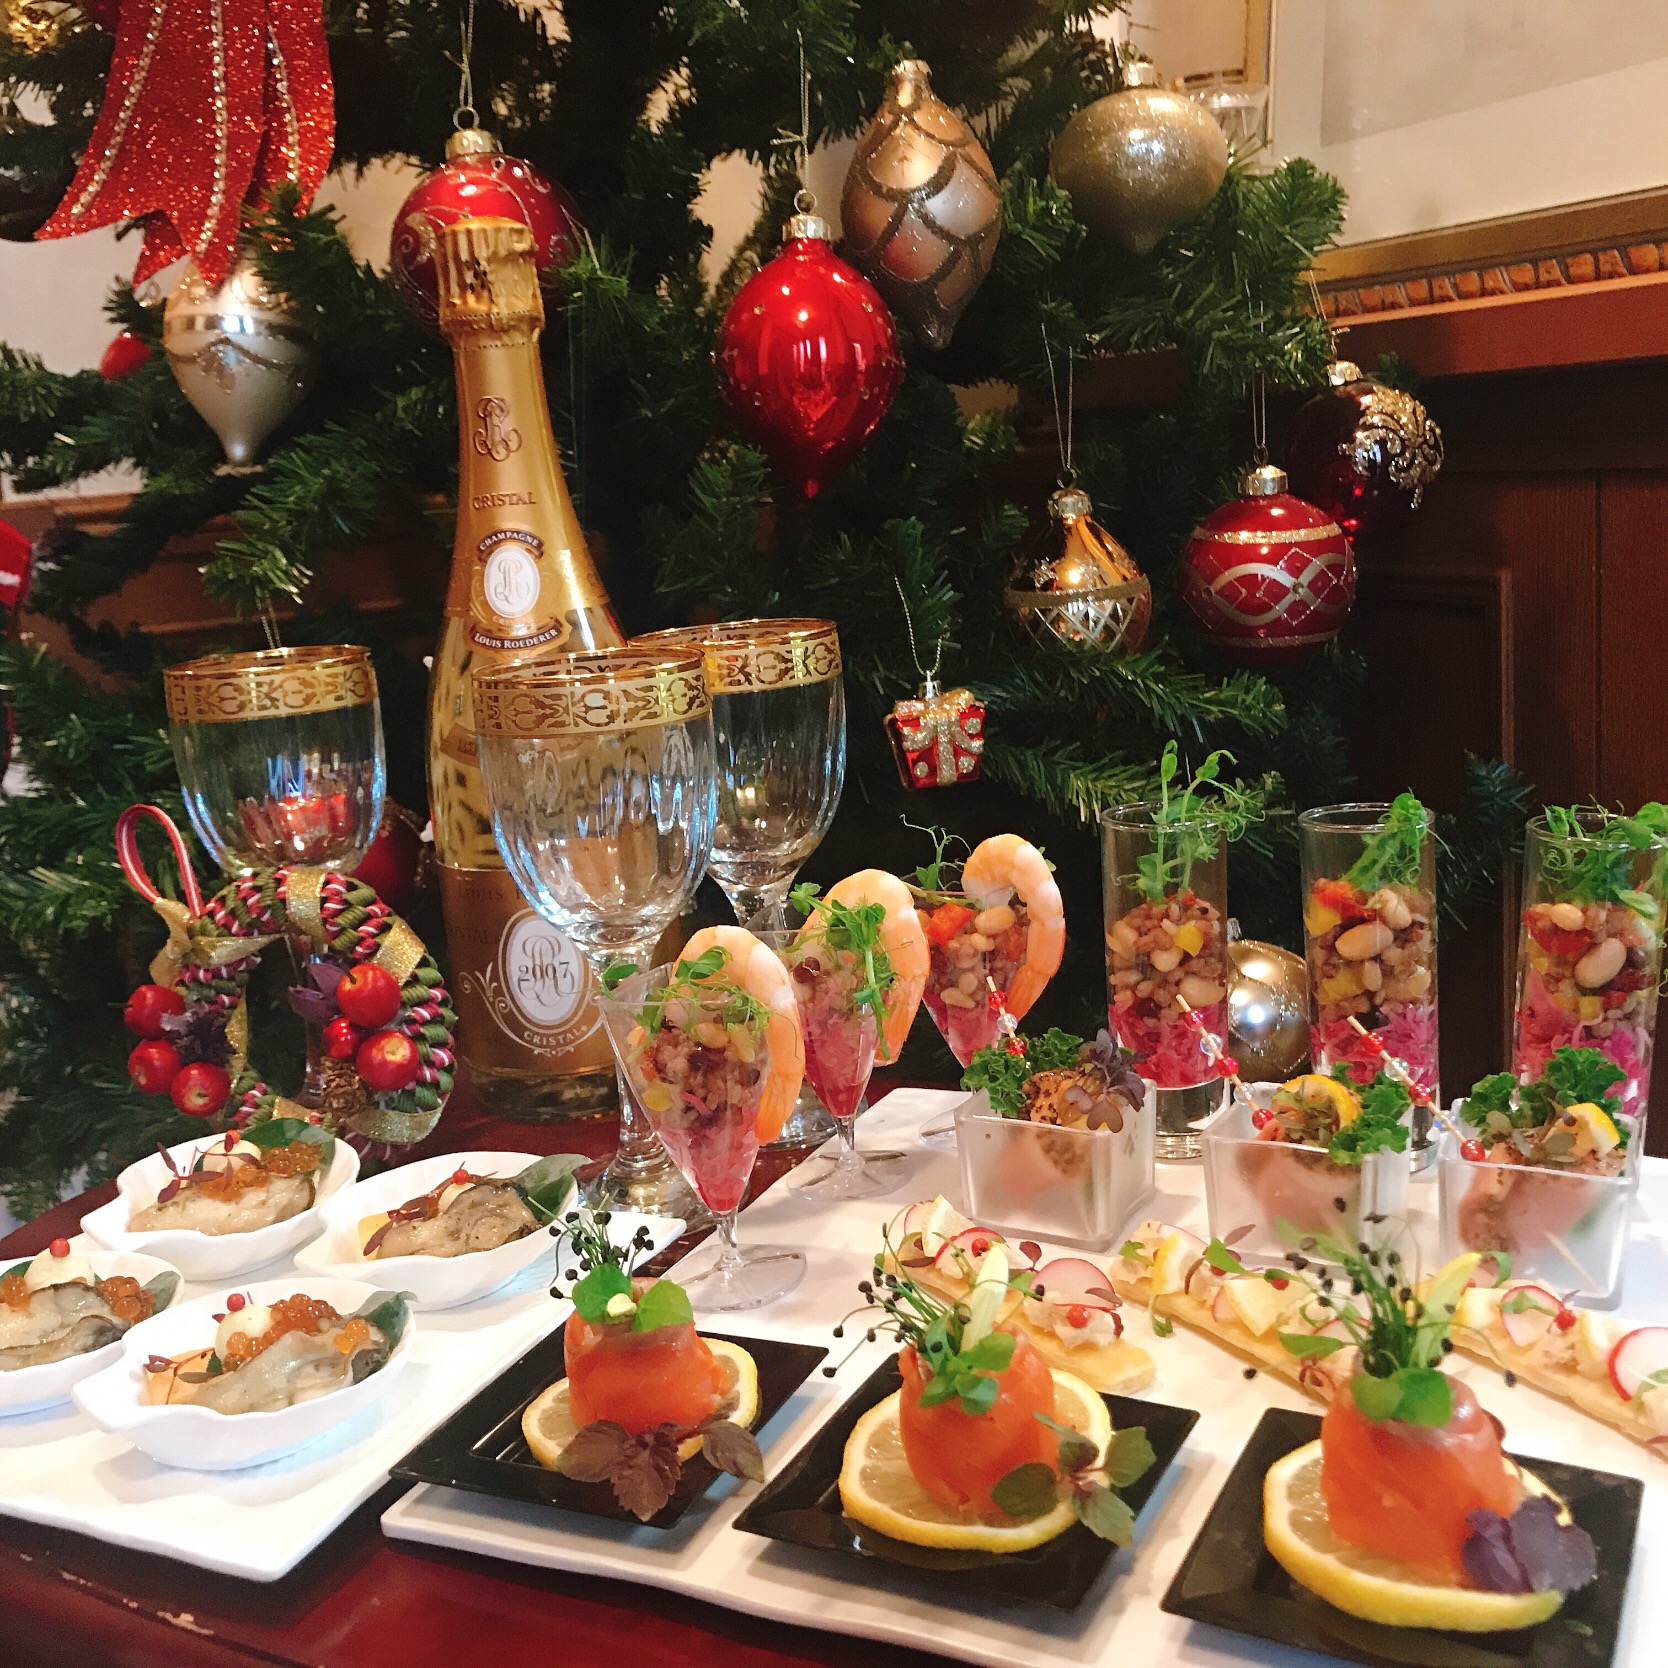 クリスマスフィンガーフード?
#マイクロハーブ#アマランサス#オイスターリーフ #日本フィンガーフード協会認定講師 
 #クリスマスパーティー  #ワインに合う #食べる宝石